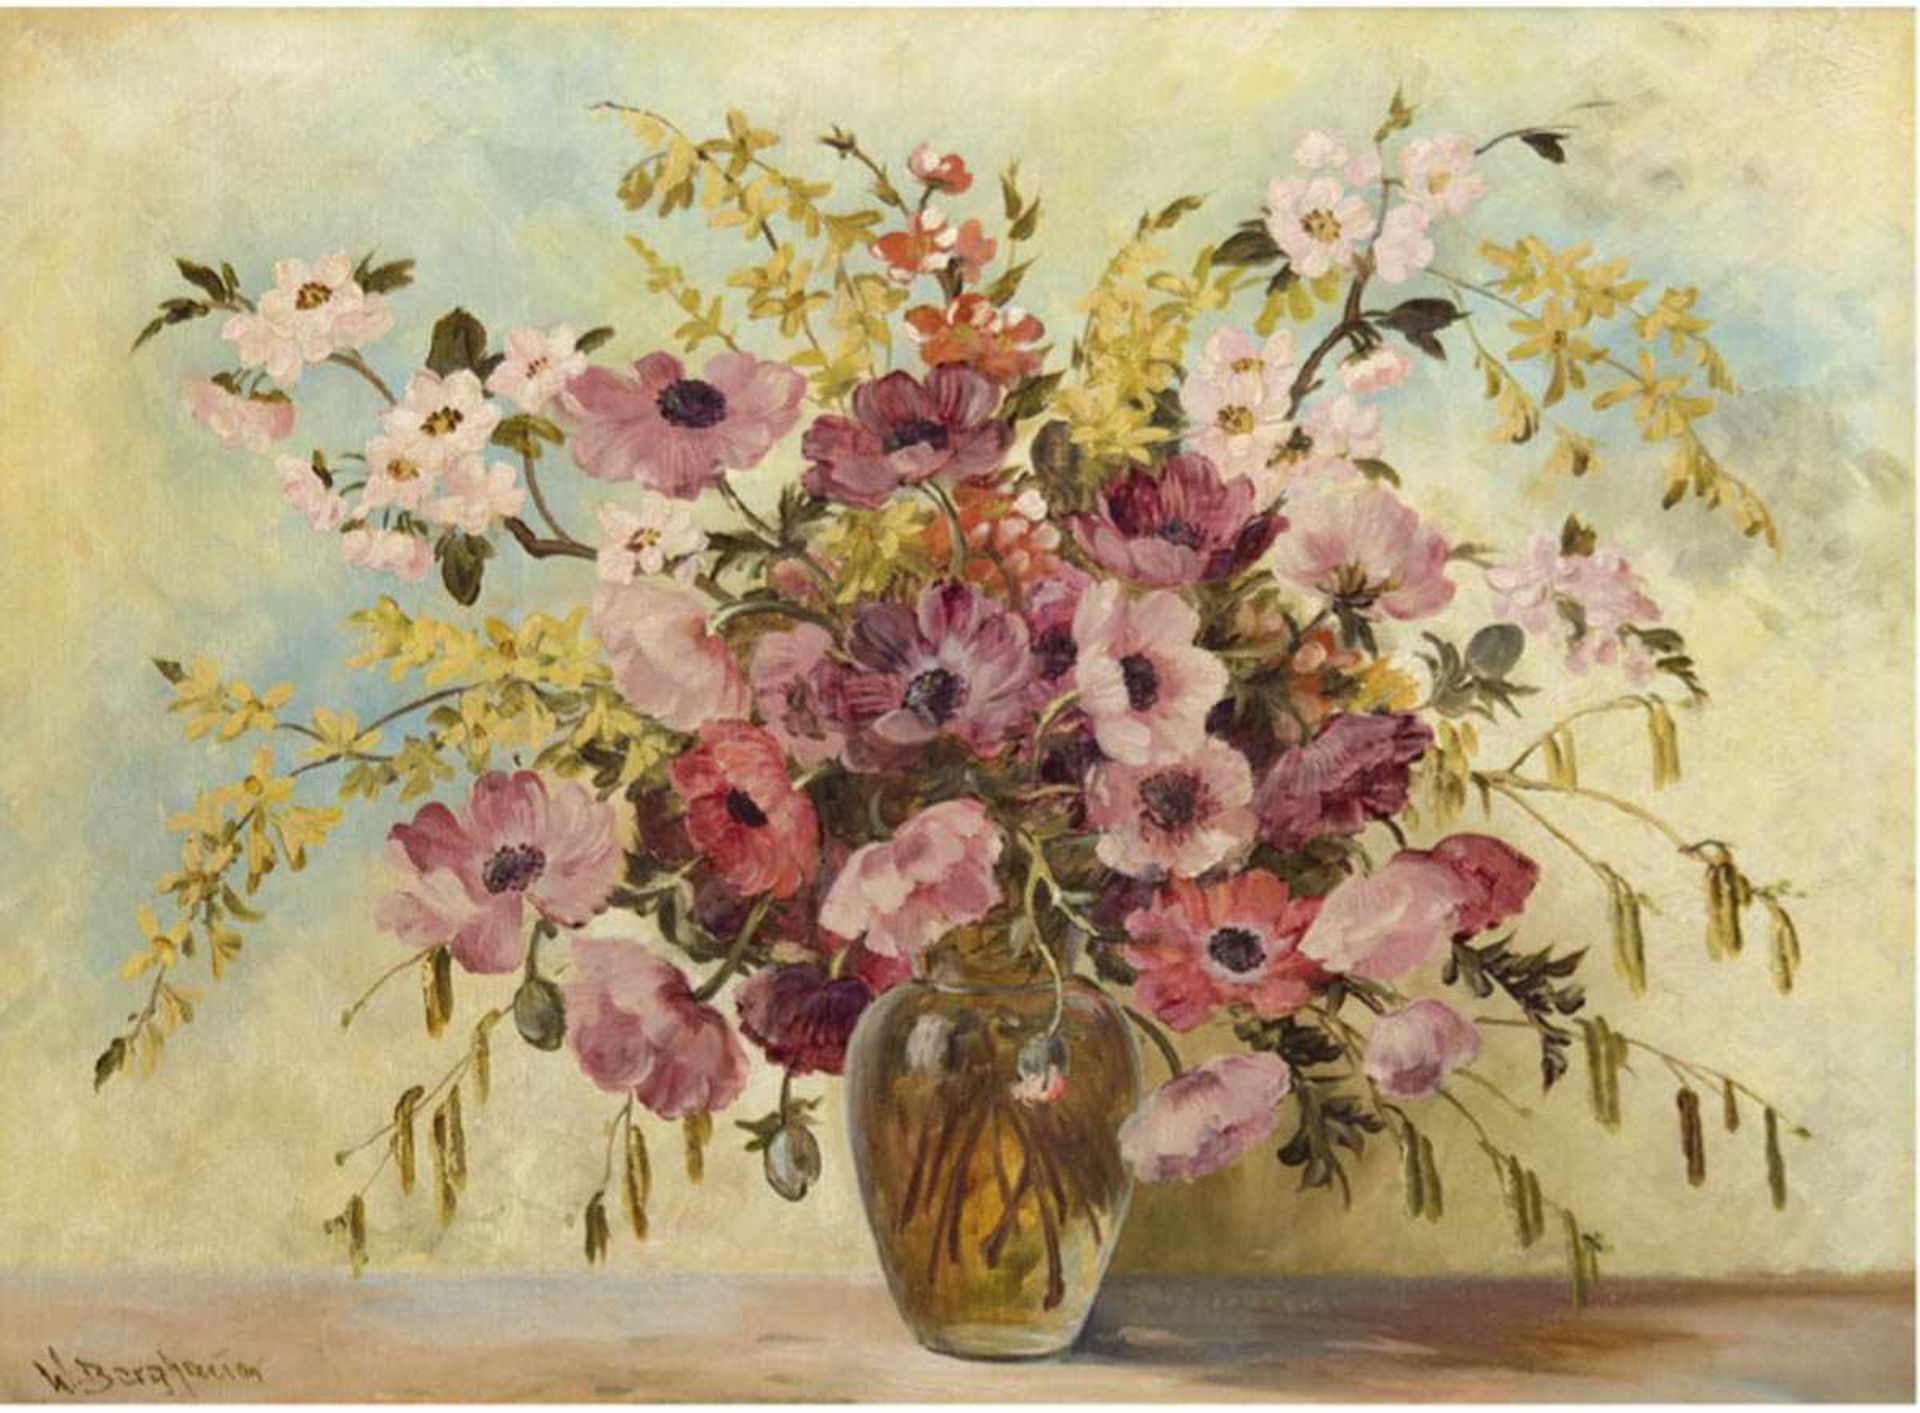 Berghauer, W., um 1930 "Vase mit Sommerblumenstrauß", Öl/Lw., sign. u.l., 60x80 cm, Rahmen